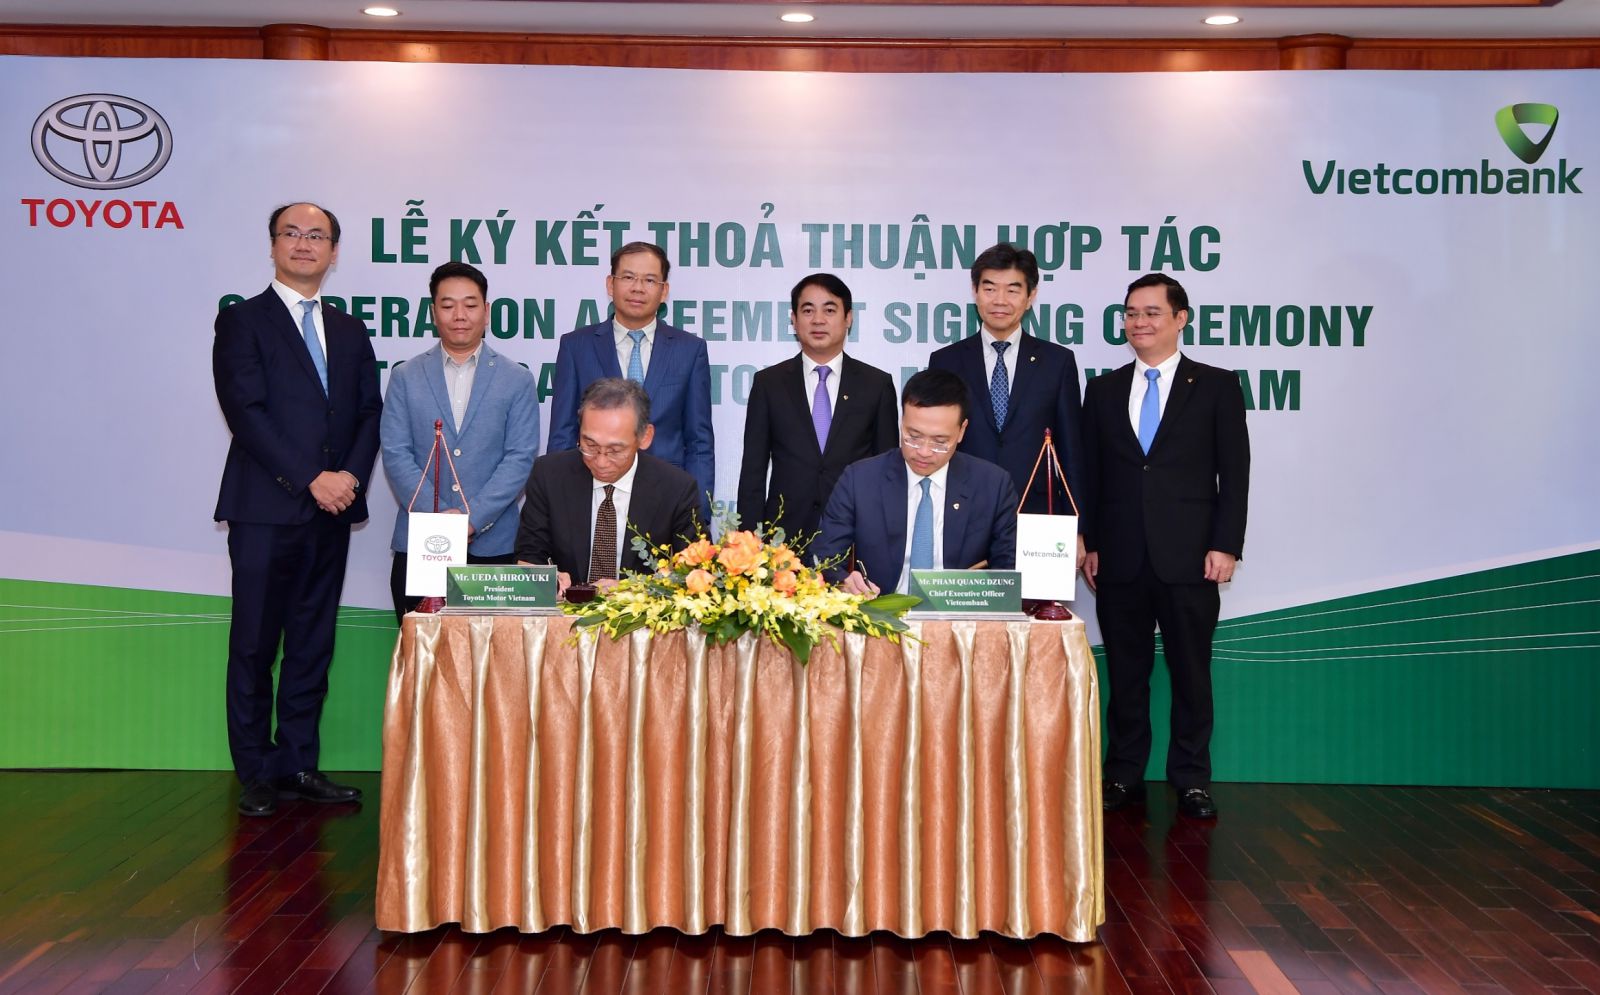 Ông Hiroyuki Ueda – Tổng Giám đốc Toyota VN (ngồi bên trái) và ông Phạm Quang Dũng – Tổng Giám đốc Vietcombank (ngồi bên phải) ký kết thỏa thuận hợp tác giữa Vietcombank và Toyota VN